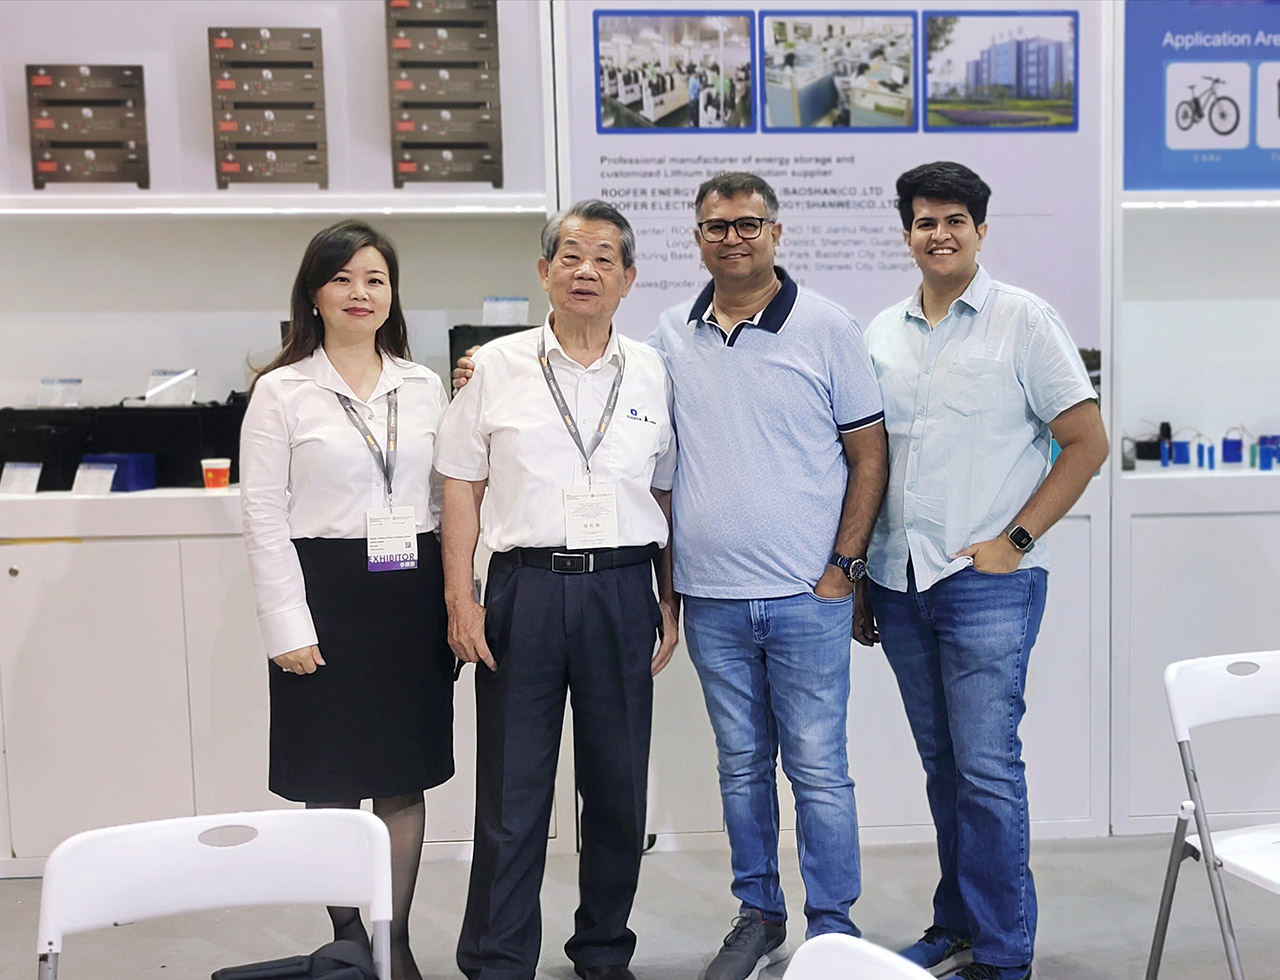 Roofer Group debuted ni Hong Kong Autumn Electronics aranse pẹlu titun agbara ipamọ awọn ọja